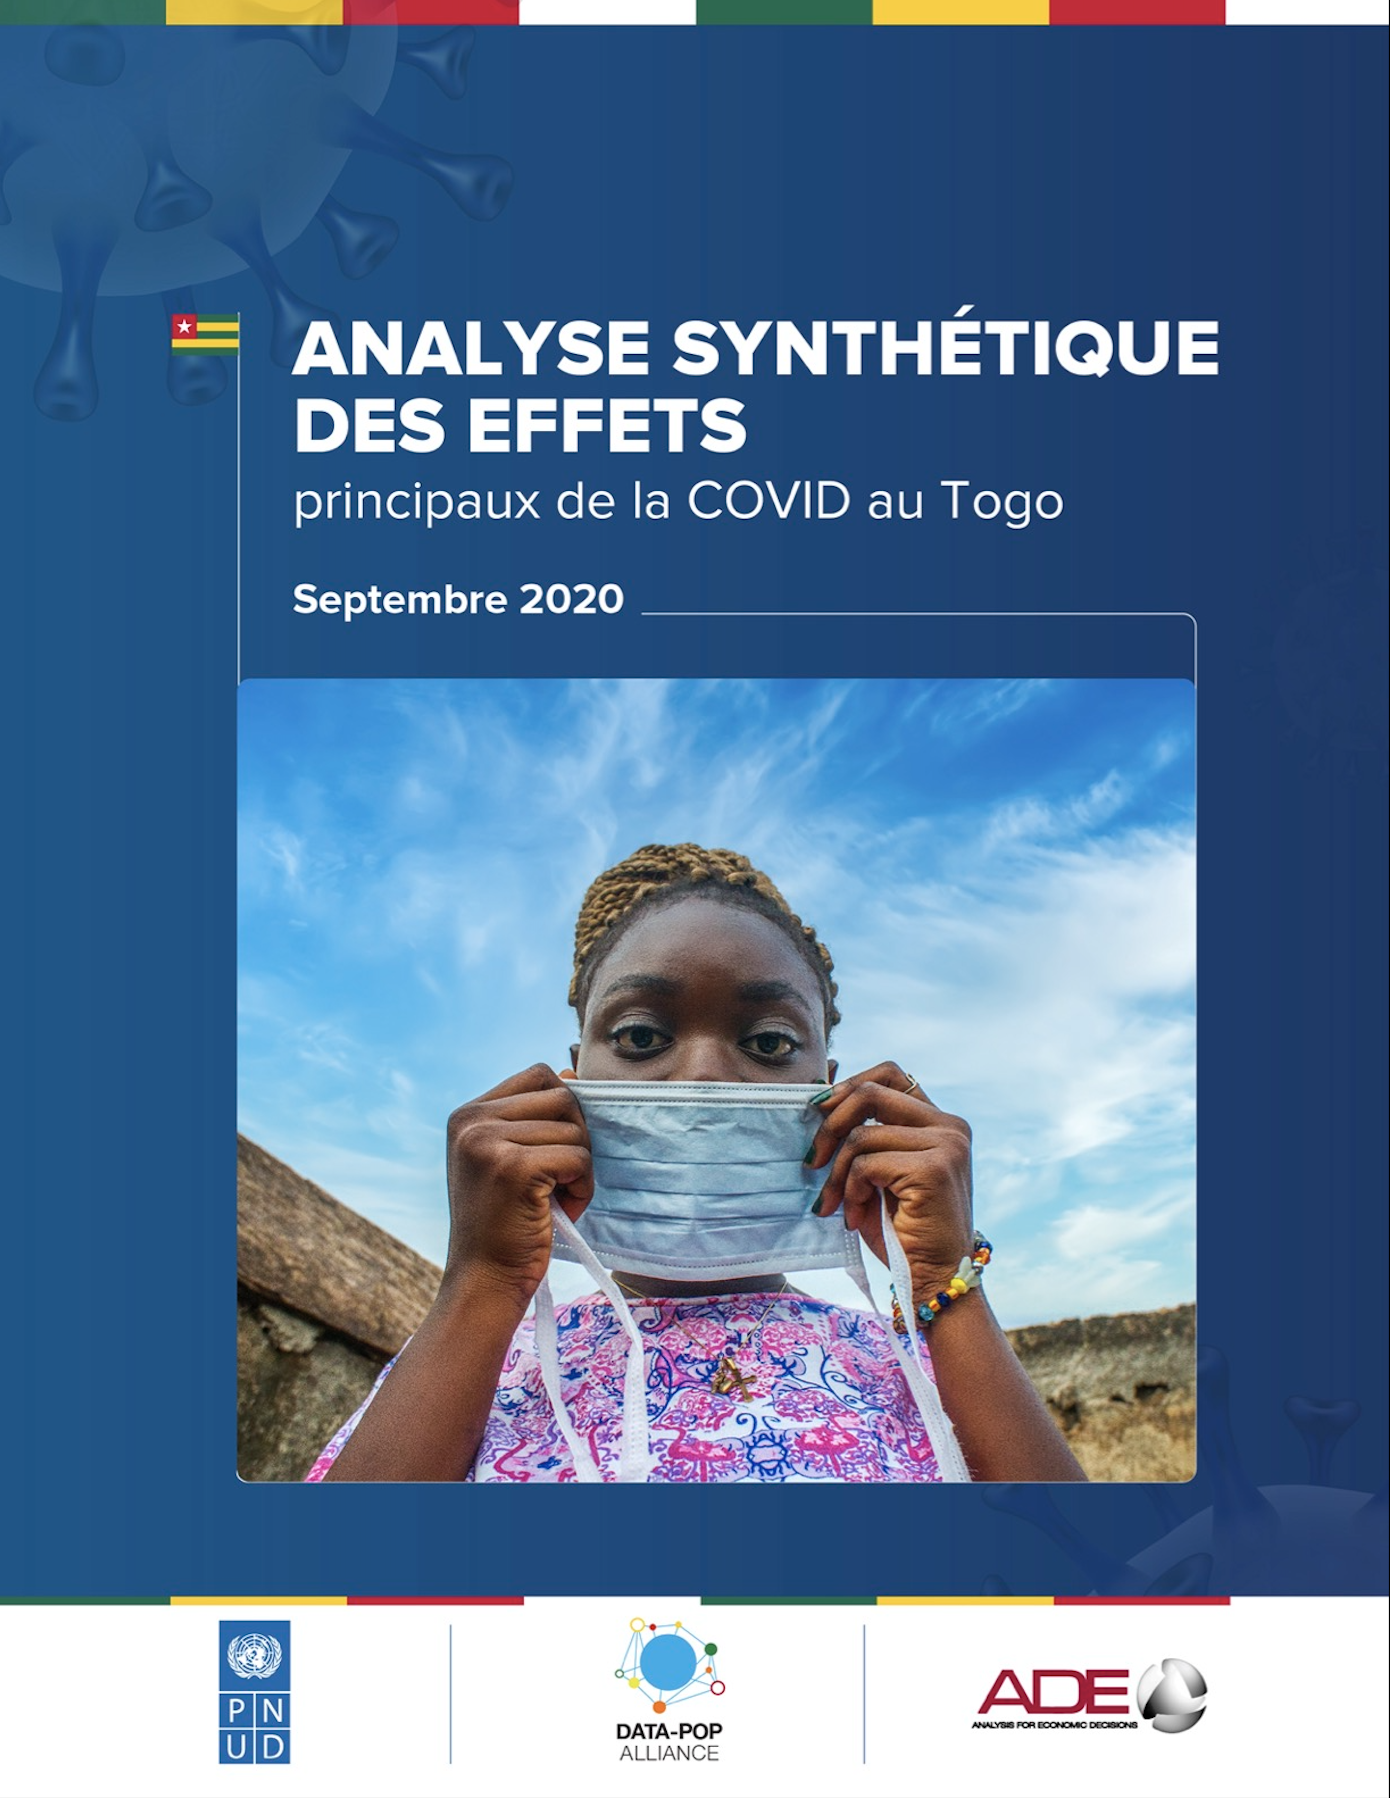 Analyse synthétique des effets principaux de la COVID au Togo